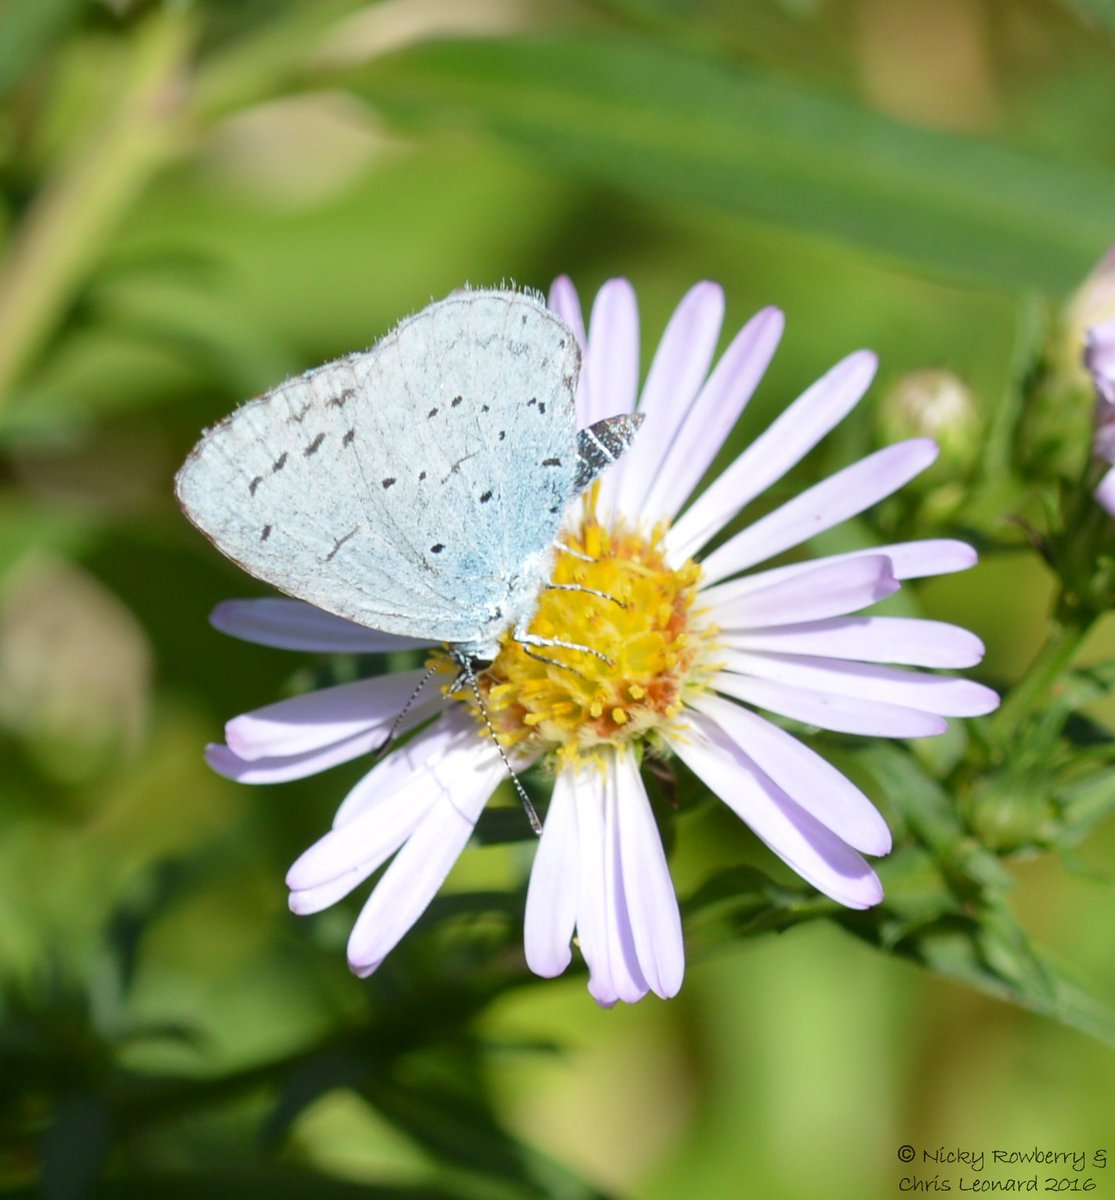 #butterflies & #Michaelmas daisies for #michaelmasday @ukbutterflies @savebutterflies @britbutterflies